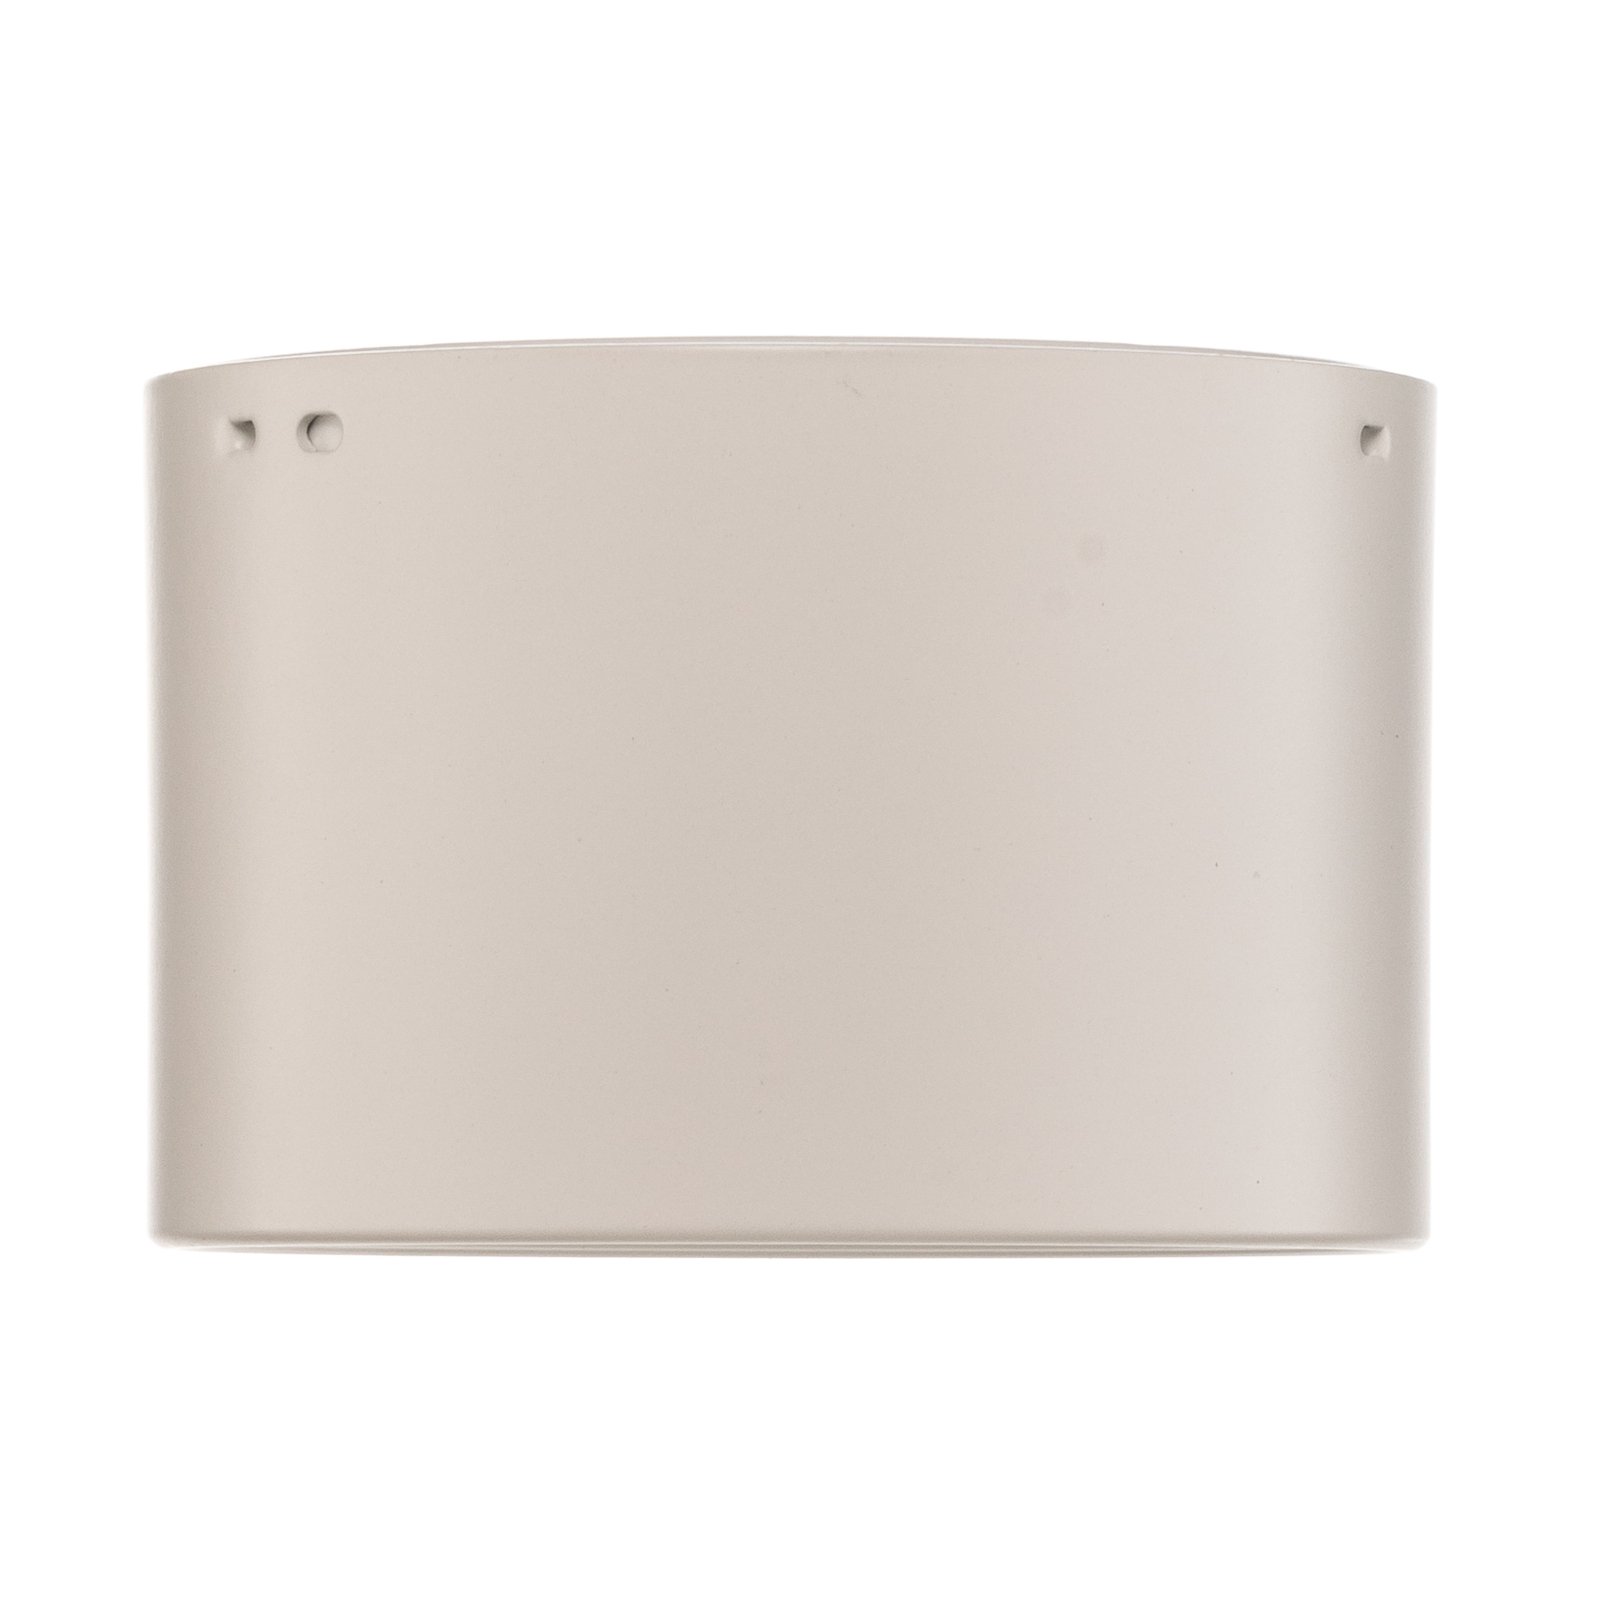 Faretto Ita LED bianco con diffusore, Ø 12 cm